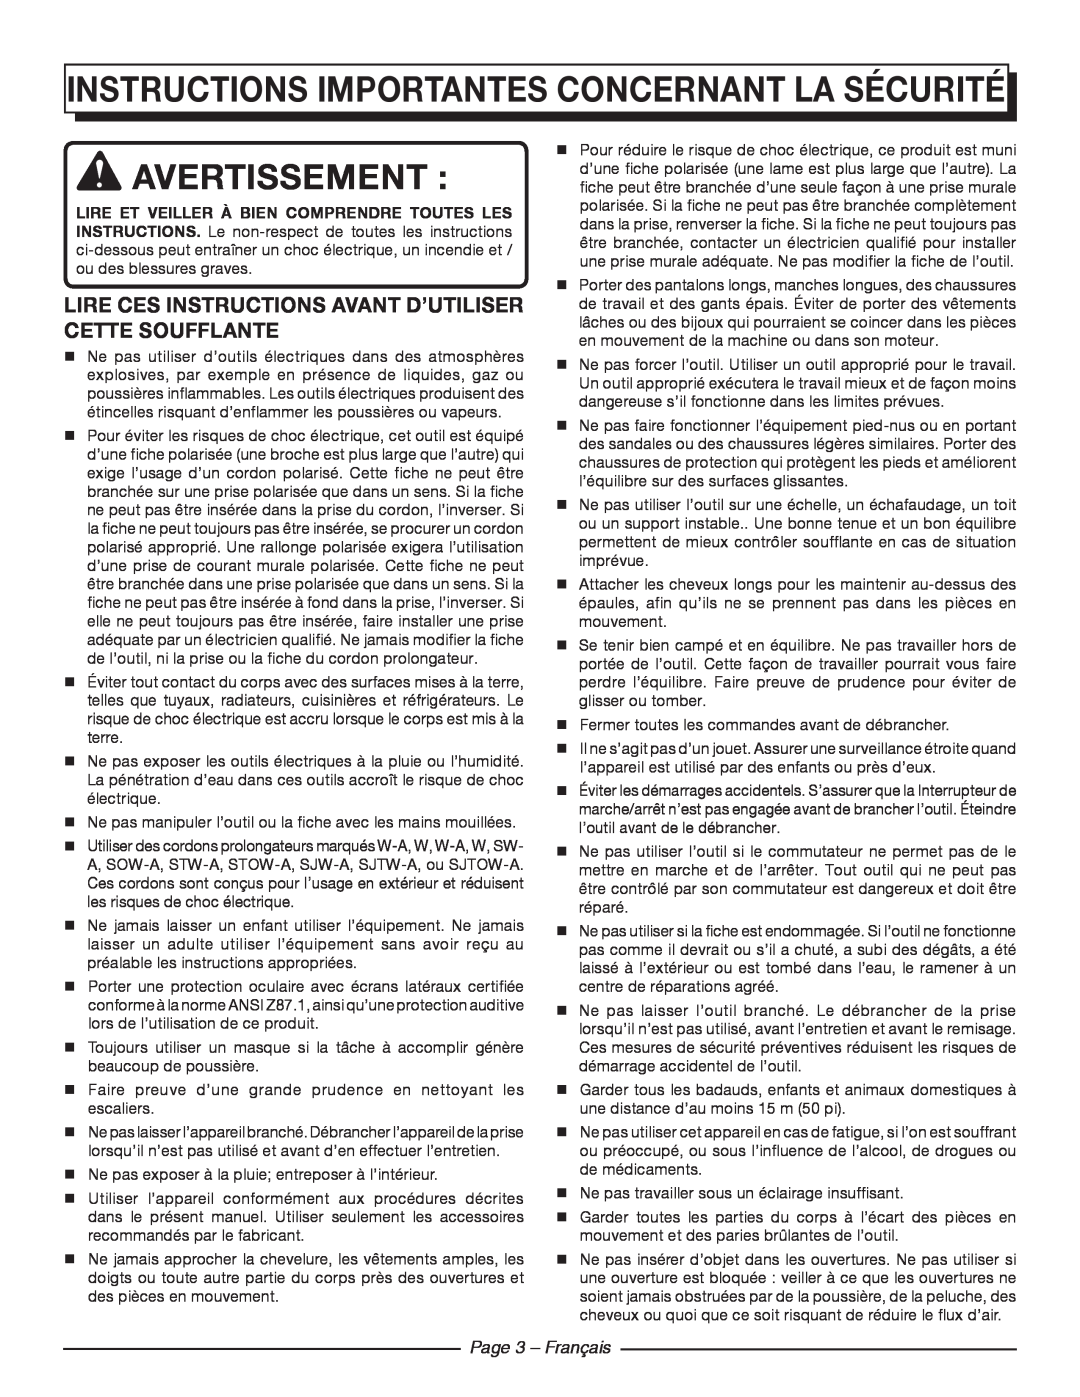 Homelite UT42100 manuel dutilisation Instructions importantes concernant la sécurité, Avertissement, Page 3 - Français 